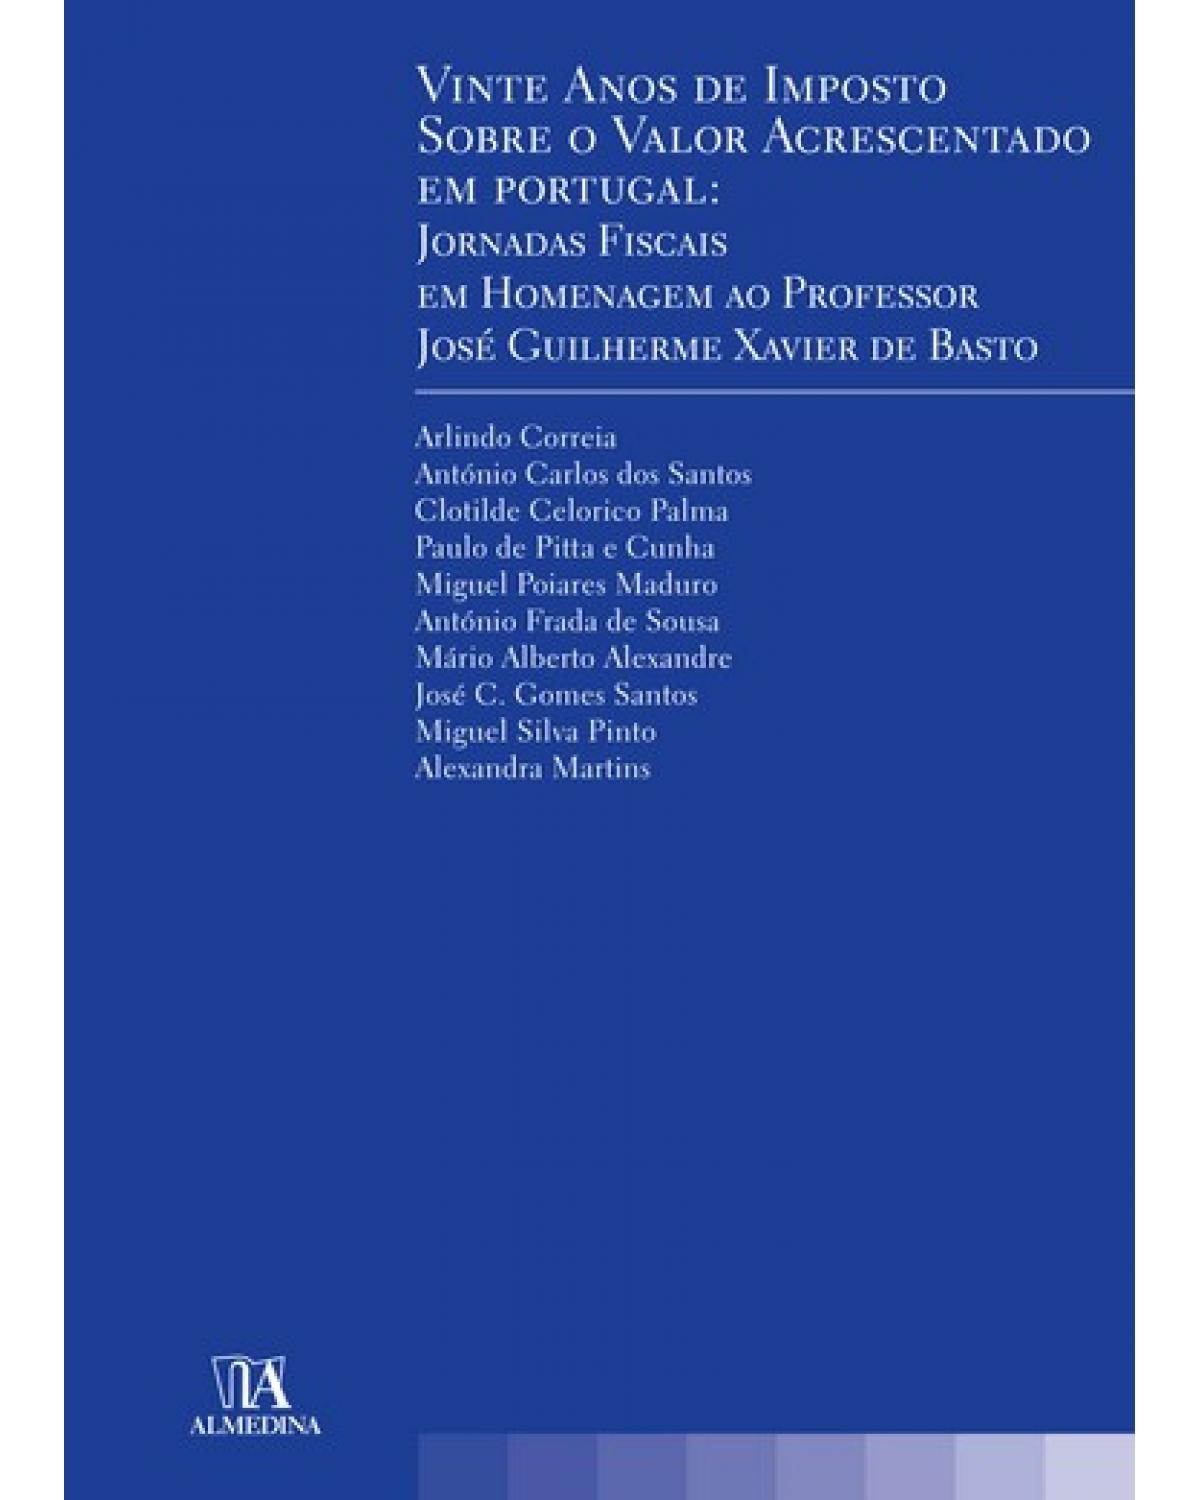 Vinte anos de imposto sobre o valor acrescentado em Portugal - jornadas fiscais em homenagem ao professor José Guilherme Xavier de Basto - 1ª Edição | 2009